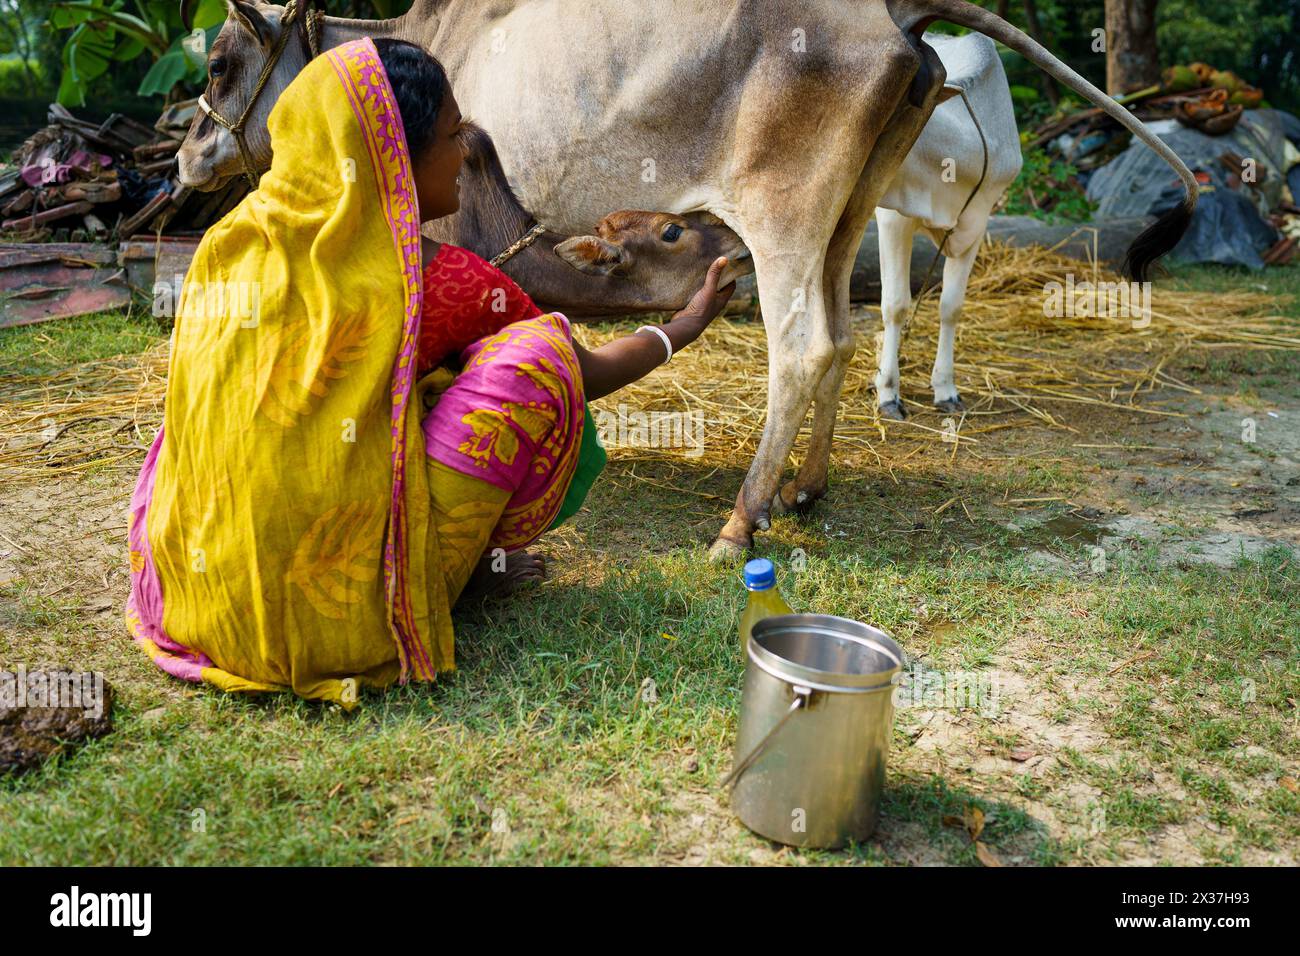 Sundarbans, Inde - 20 octobre 2023 : une agricultrice indienne en sari traditionnel est vue traire une vache dans sa ferme en Inde rurale. Femme indienne au travail Banque D'Images